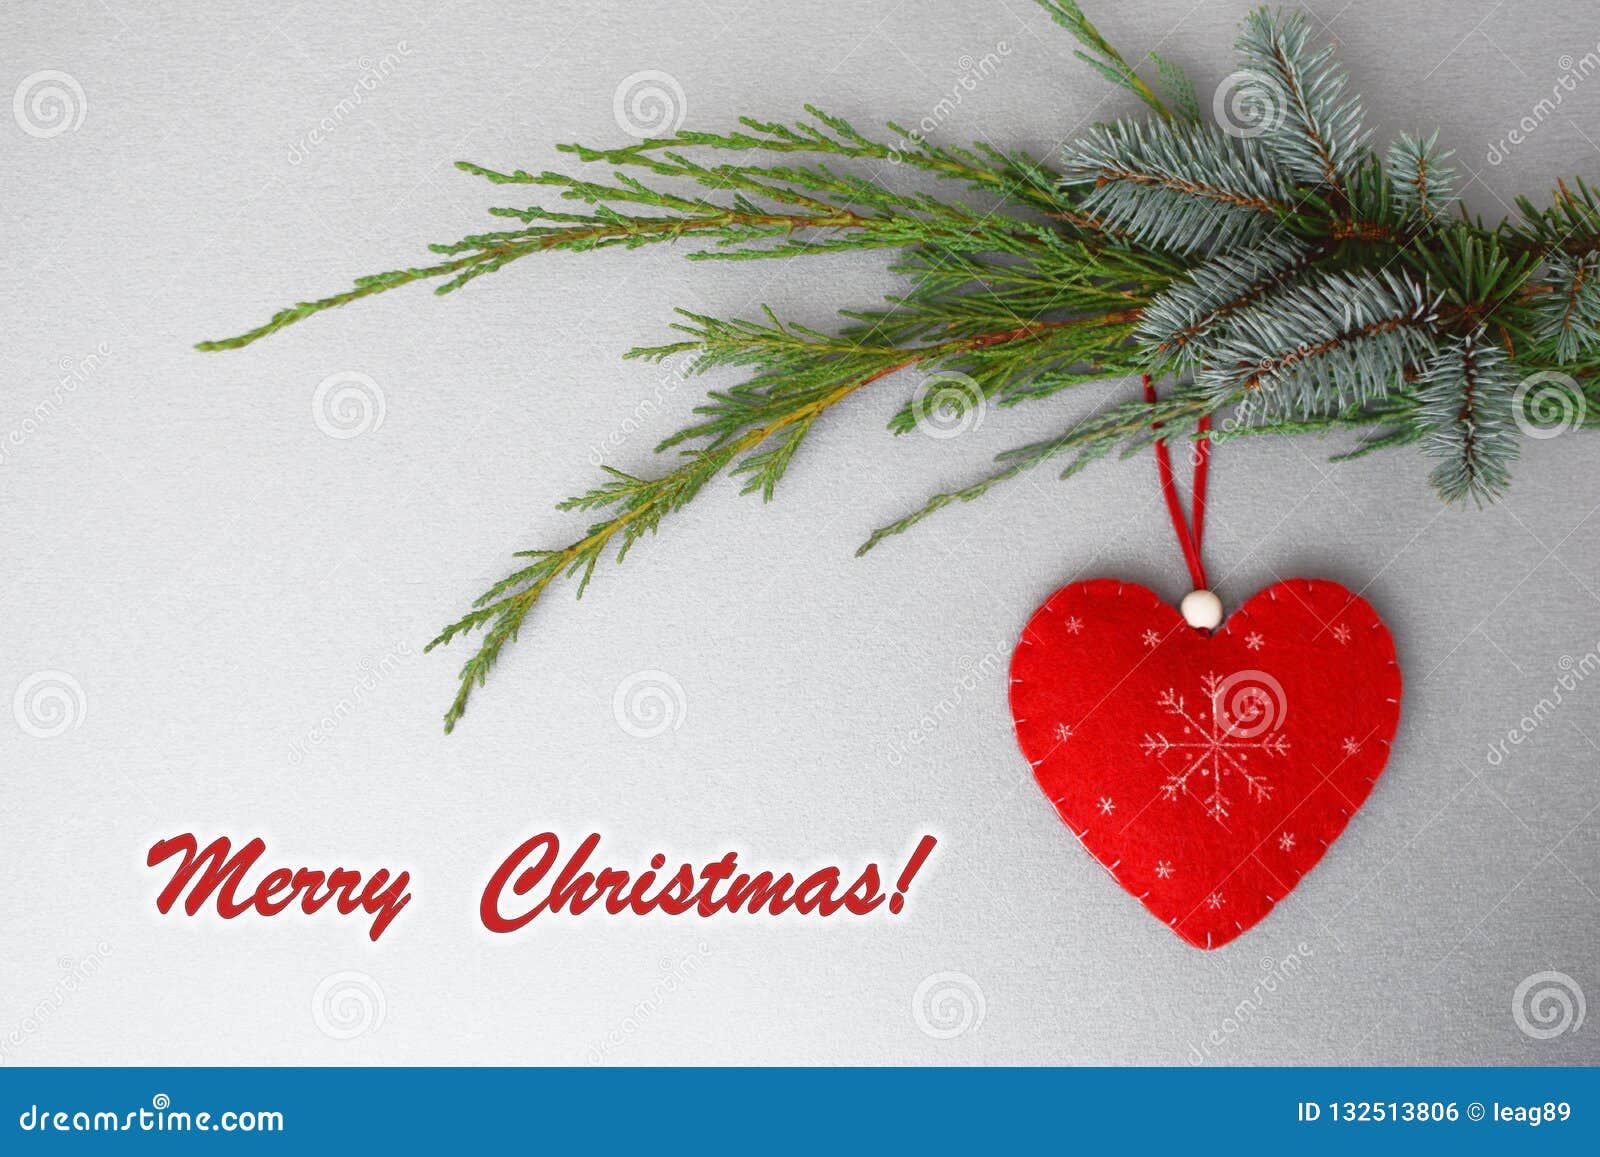 Merry Xmas Pola Mini Heart Tin Gift Present Happy Christmas Stocking Filler 